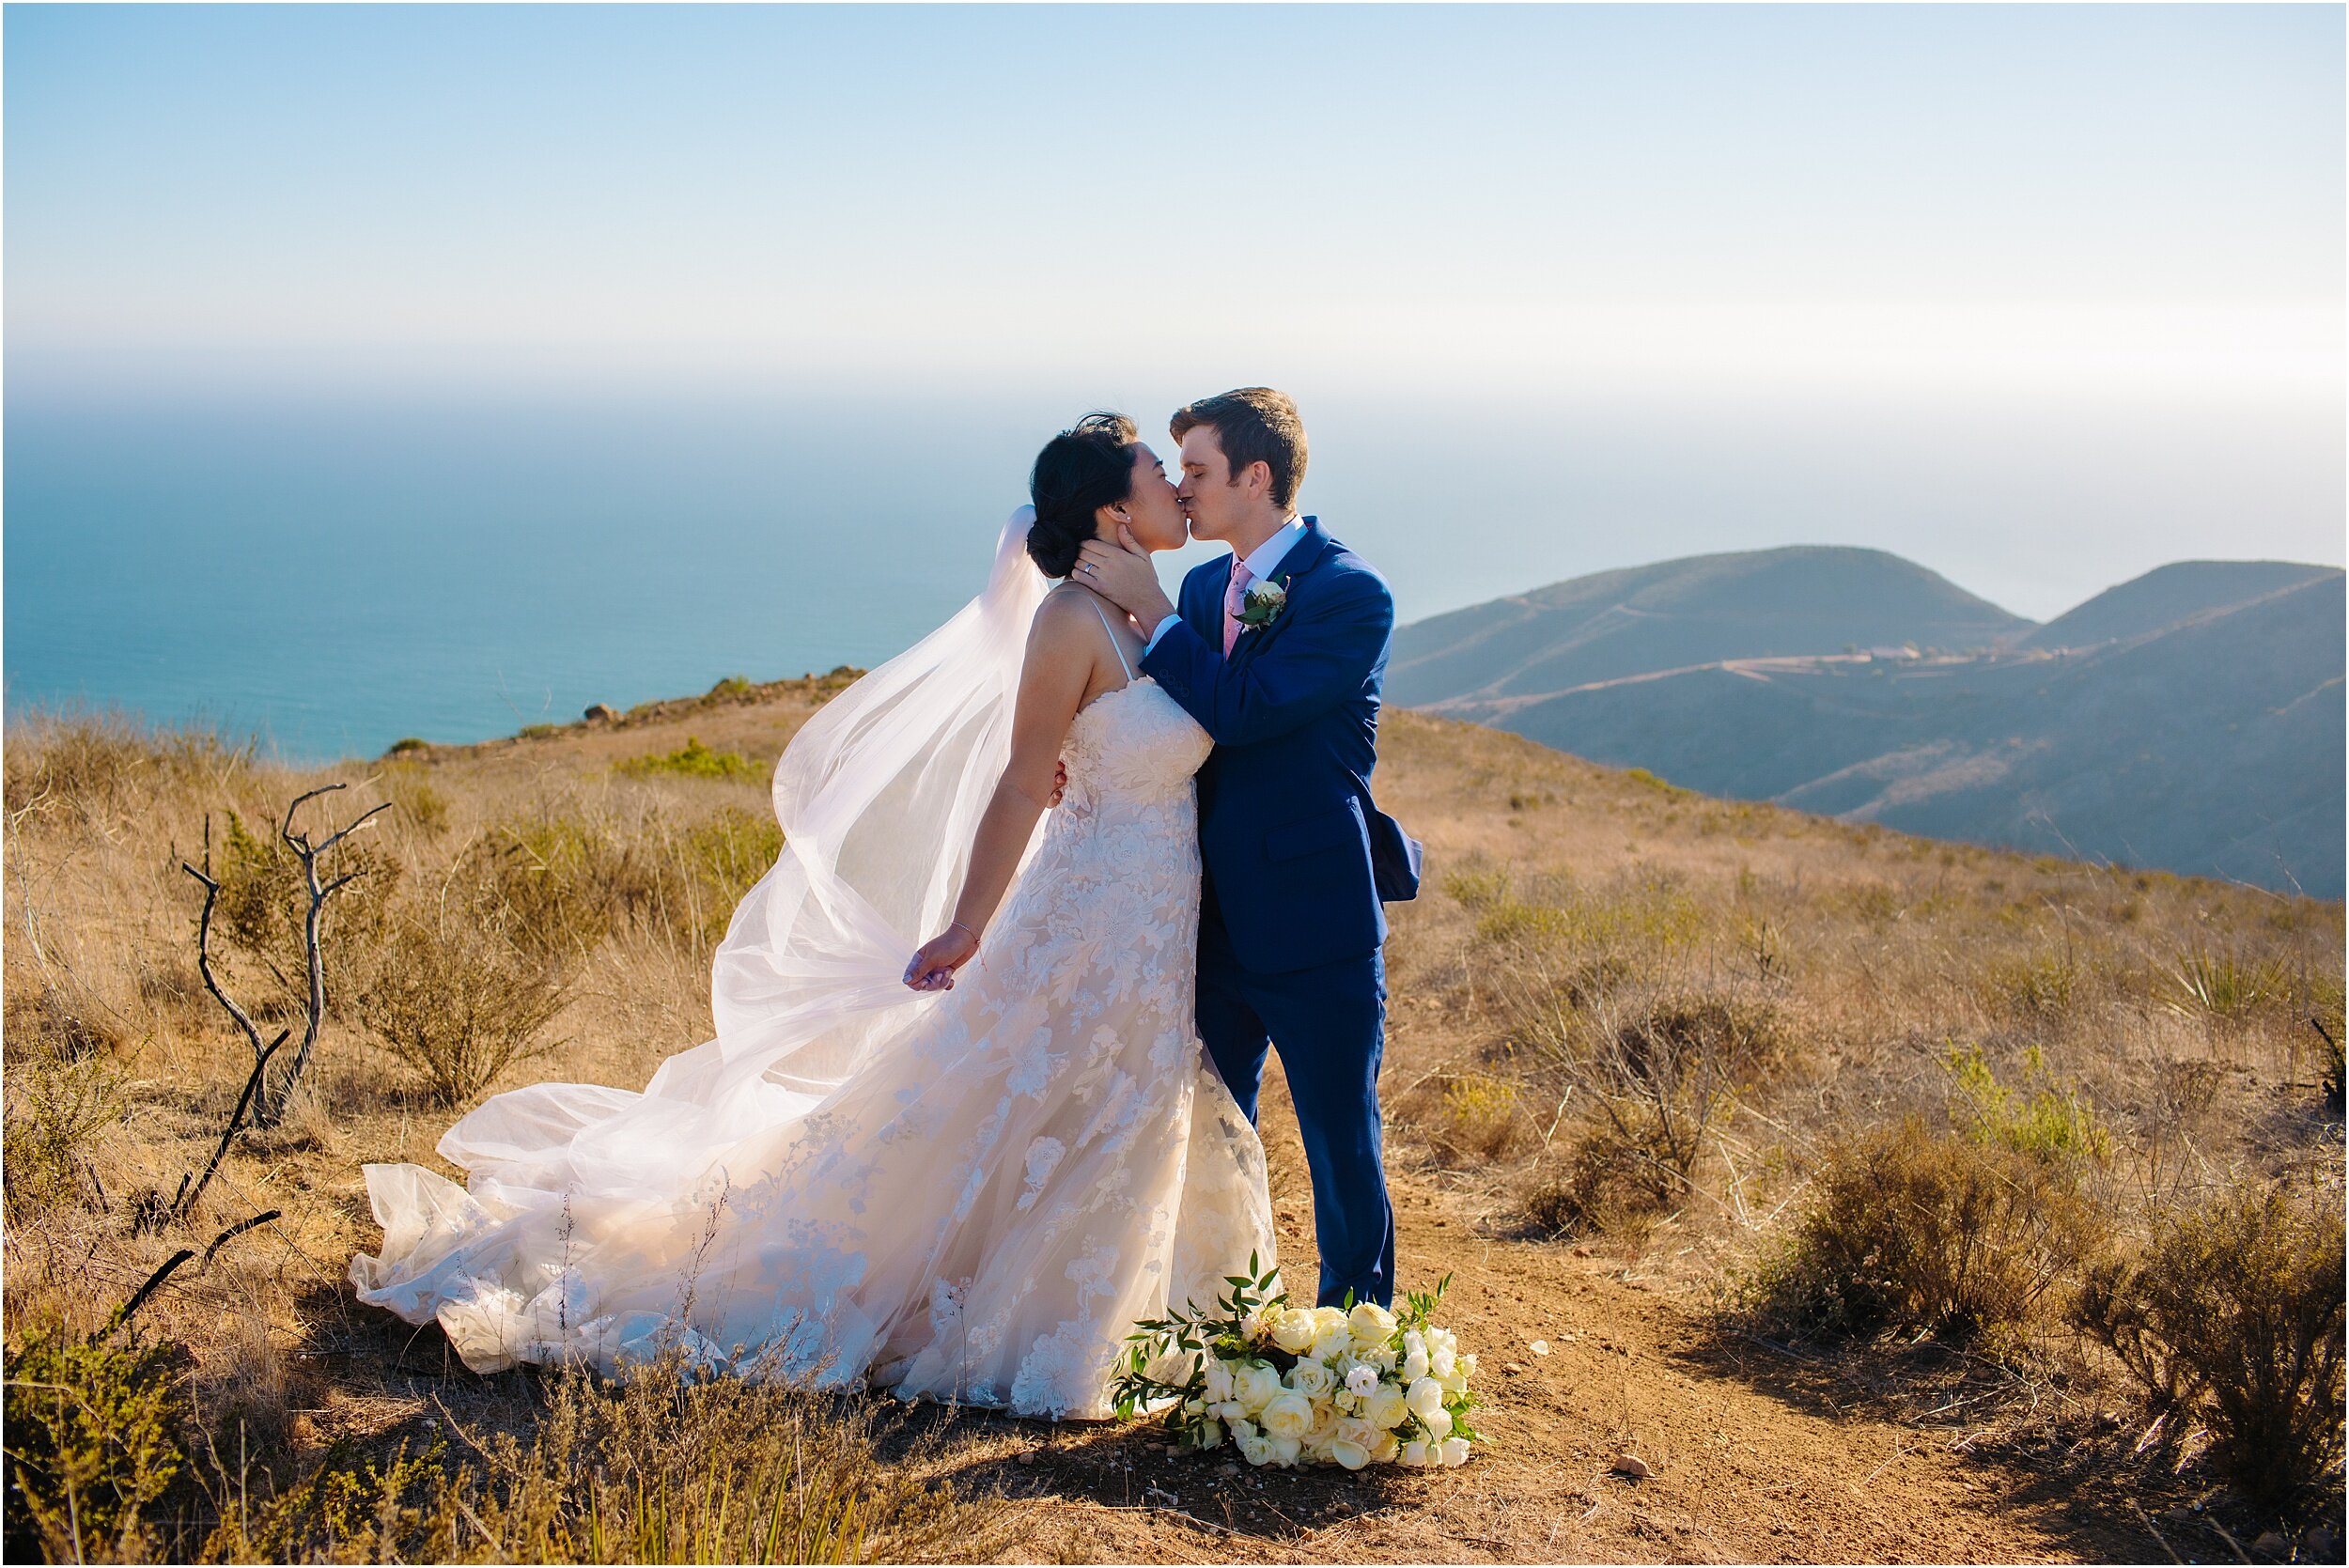 Amy and Jeff | Small Malibu Wedding | Malibu Elopement Photographer_0037.jpg